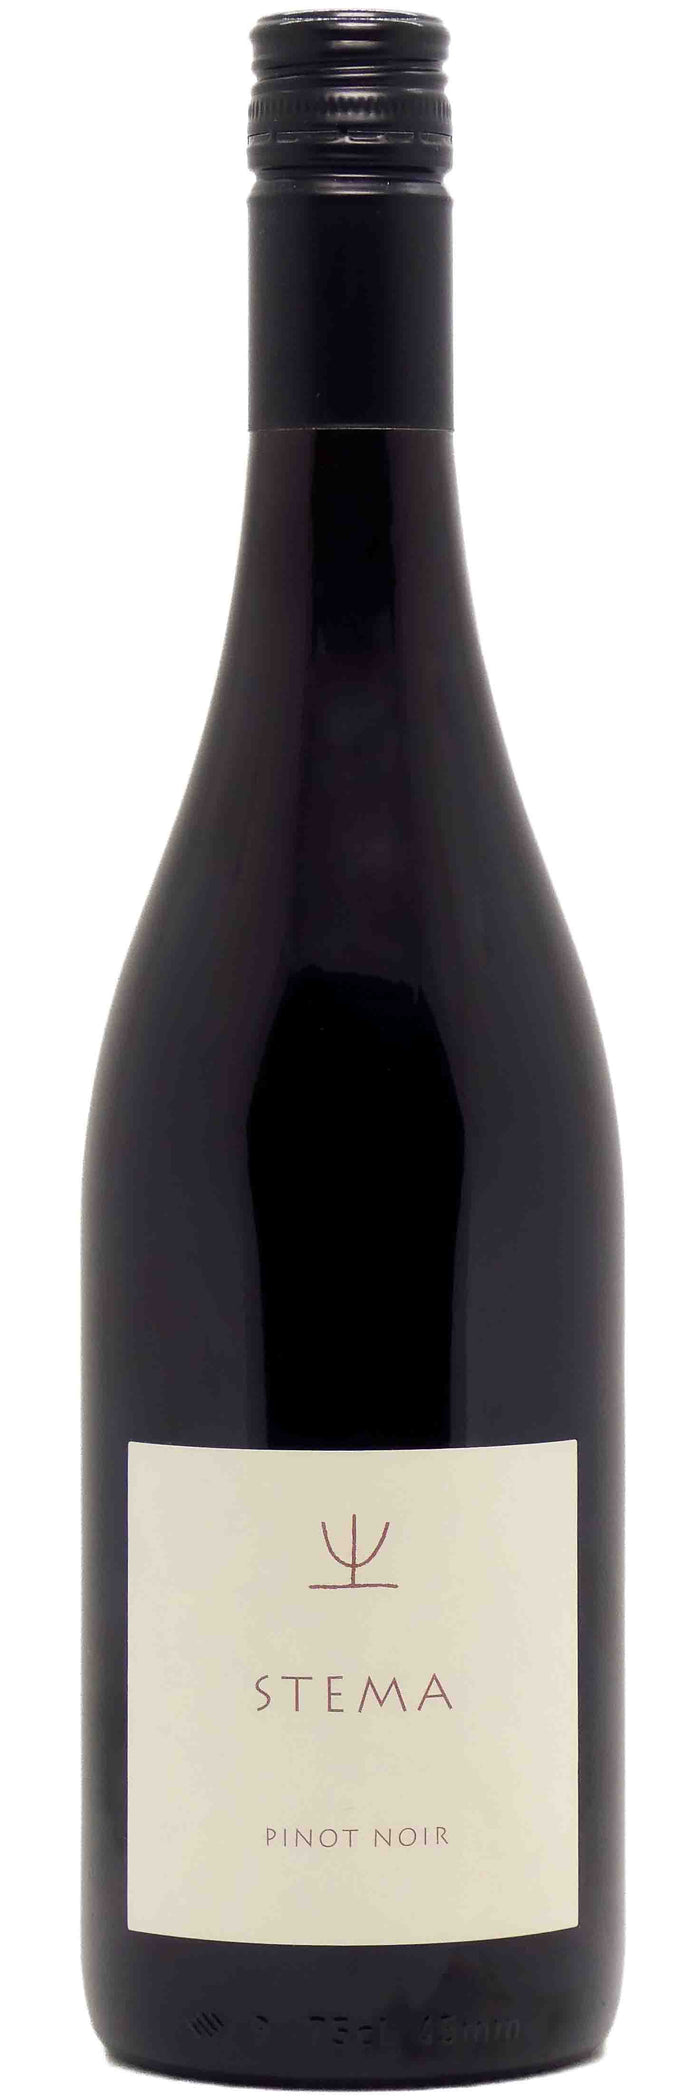 Terre Gaie Veneto Pinot Noir "Stema"